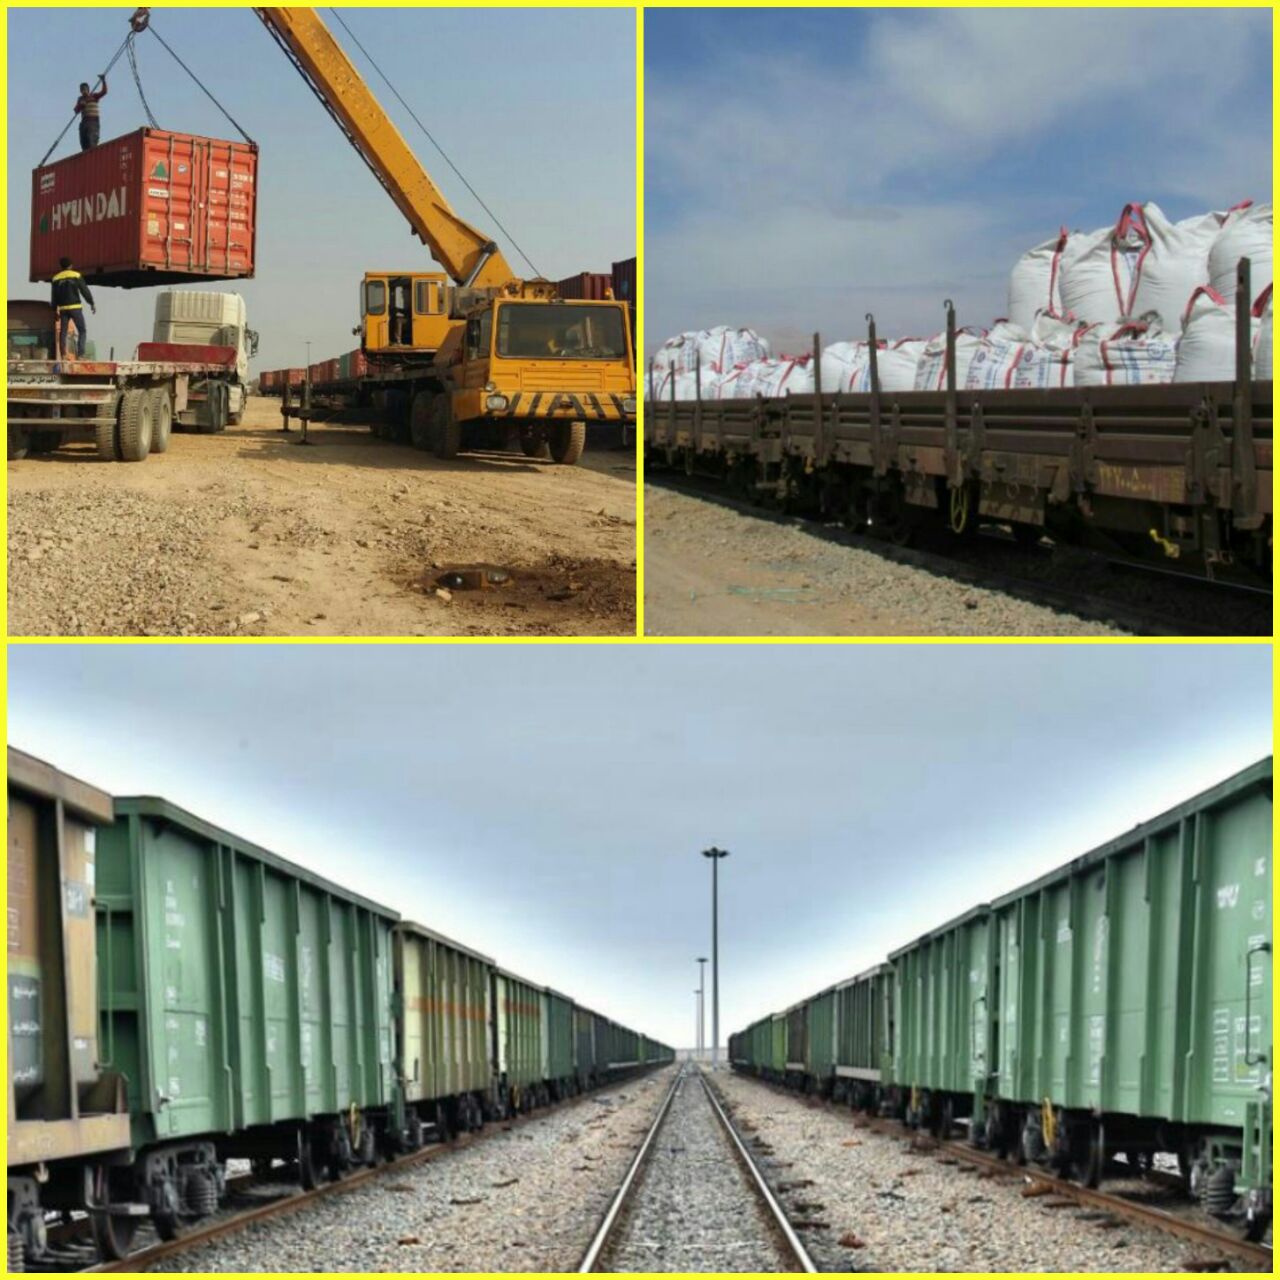 بالاترین سرعت بازرگانی برای راه آهن شمالشرق۱ ثبت شد